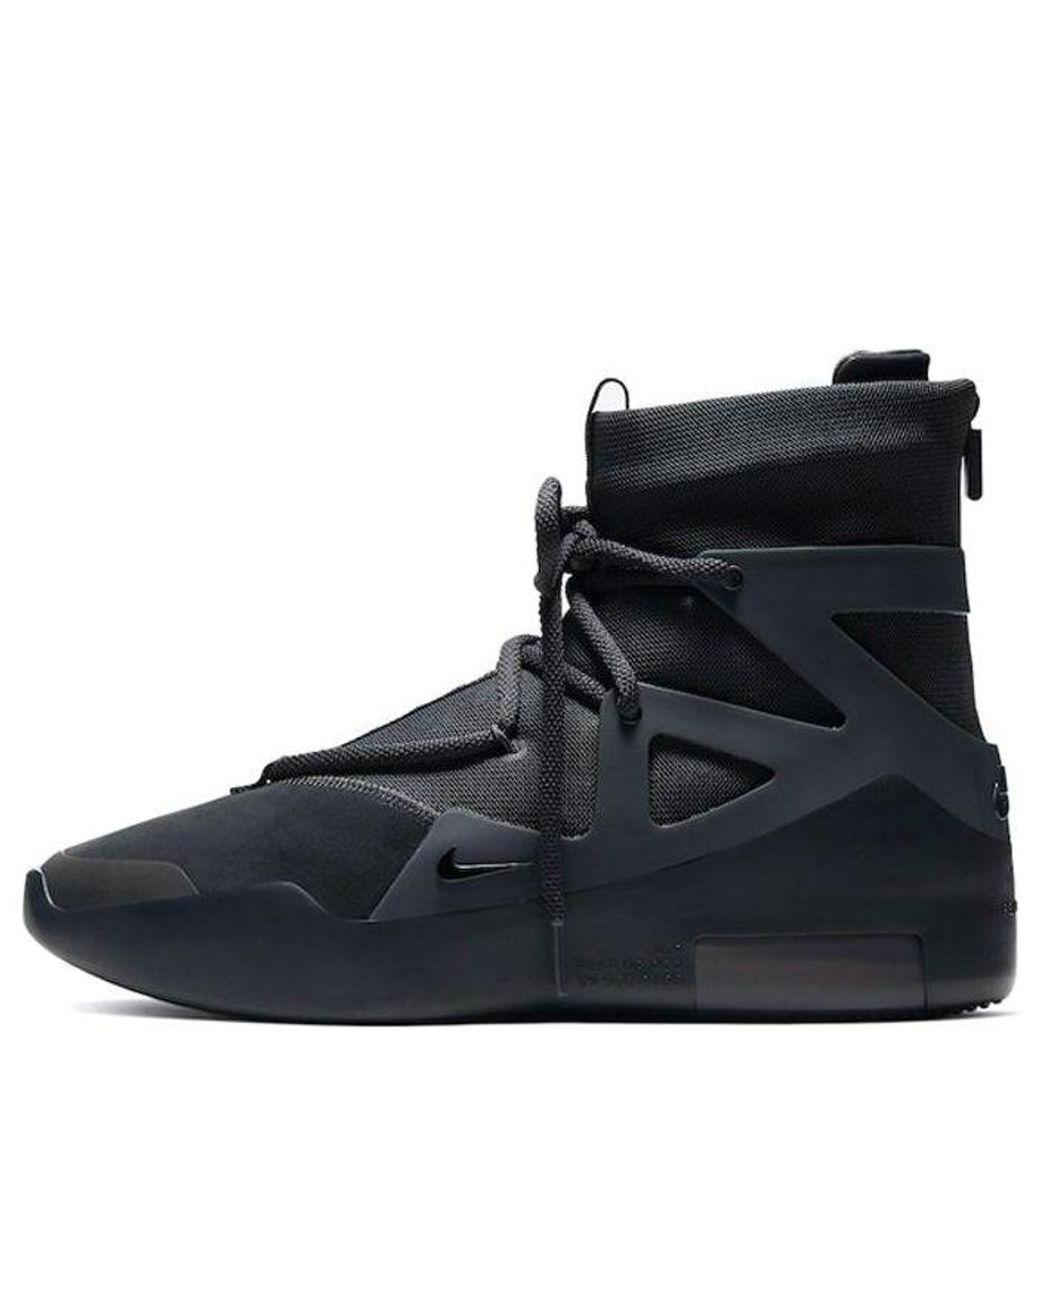 Nike Air Raid OG Black/Grey Sneakers - Farfetch